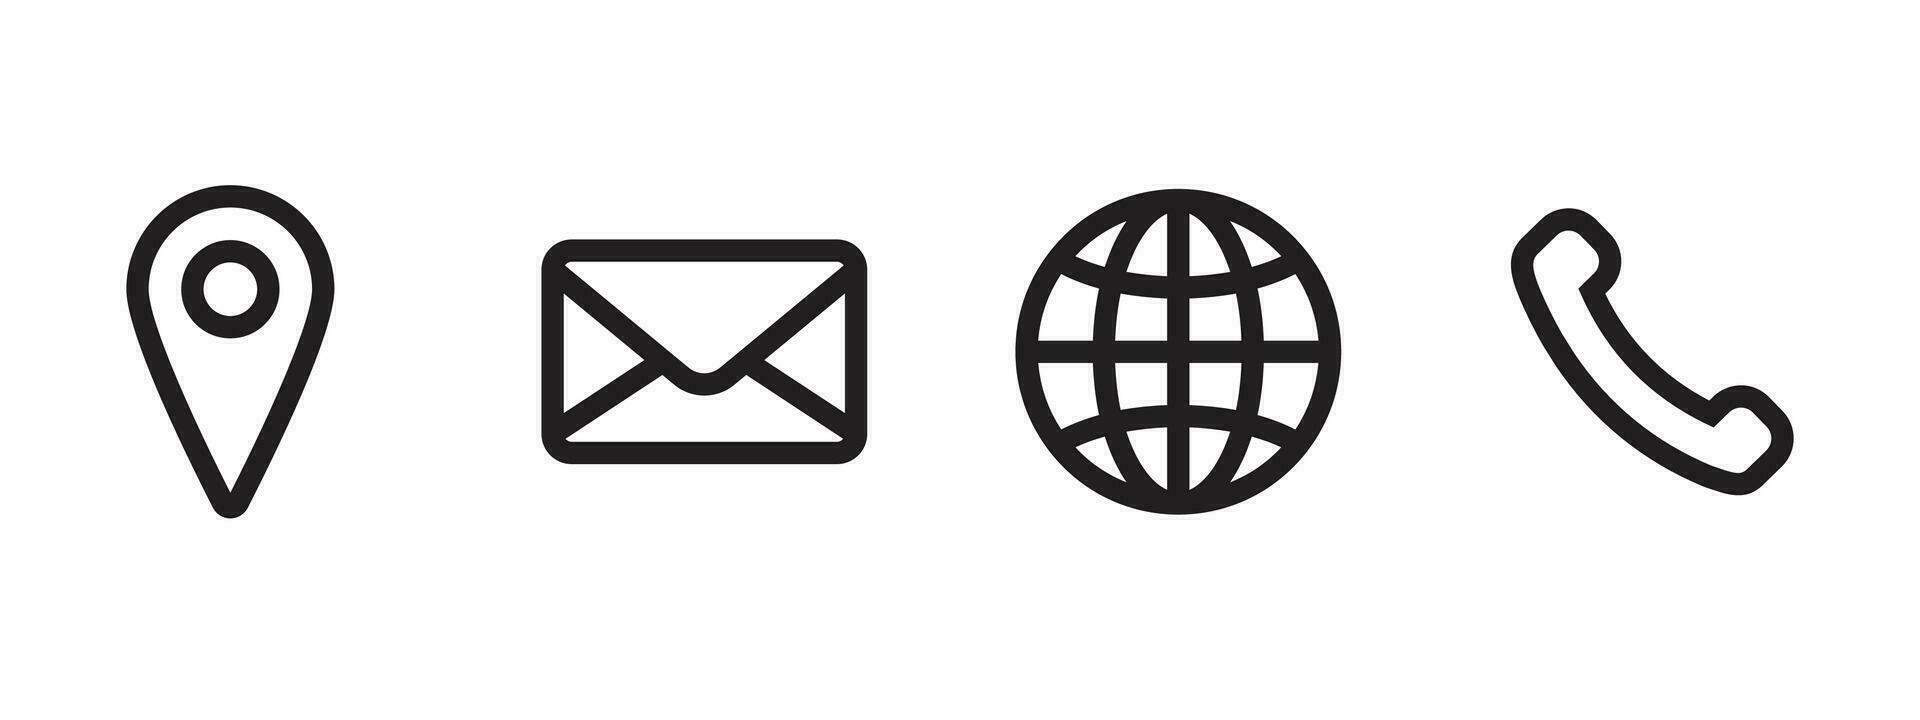 ufficio e-mail Posizione sito web icona simbolo logo vettore